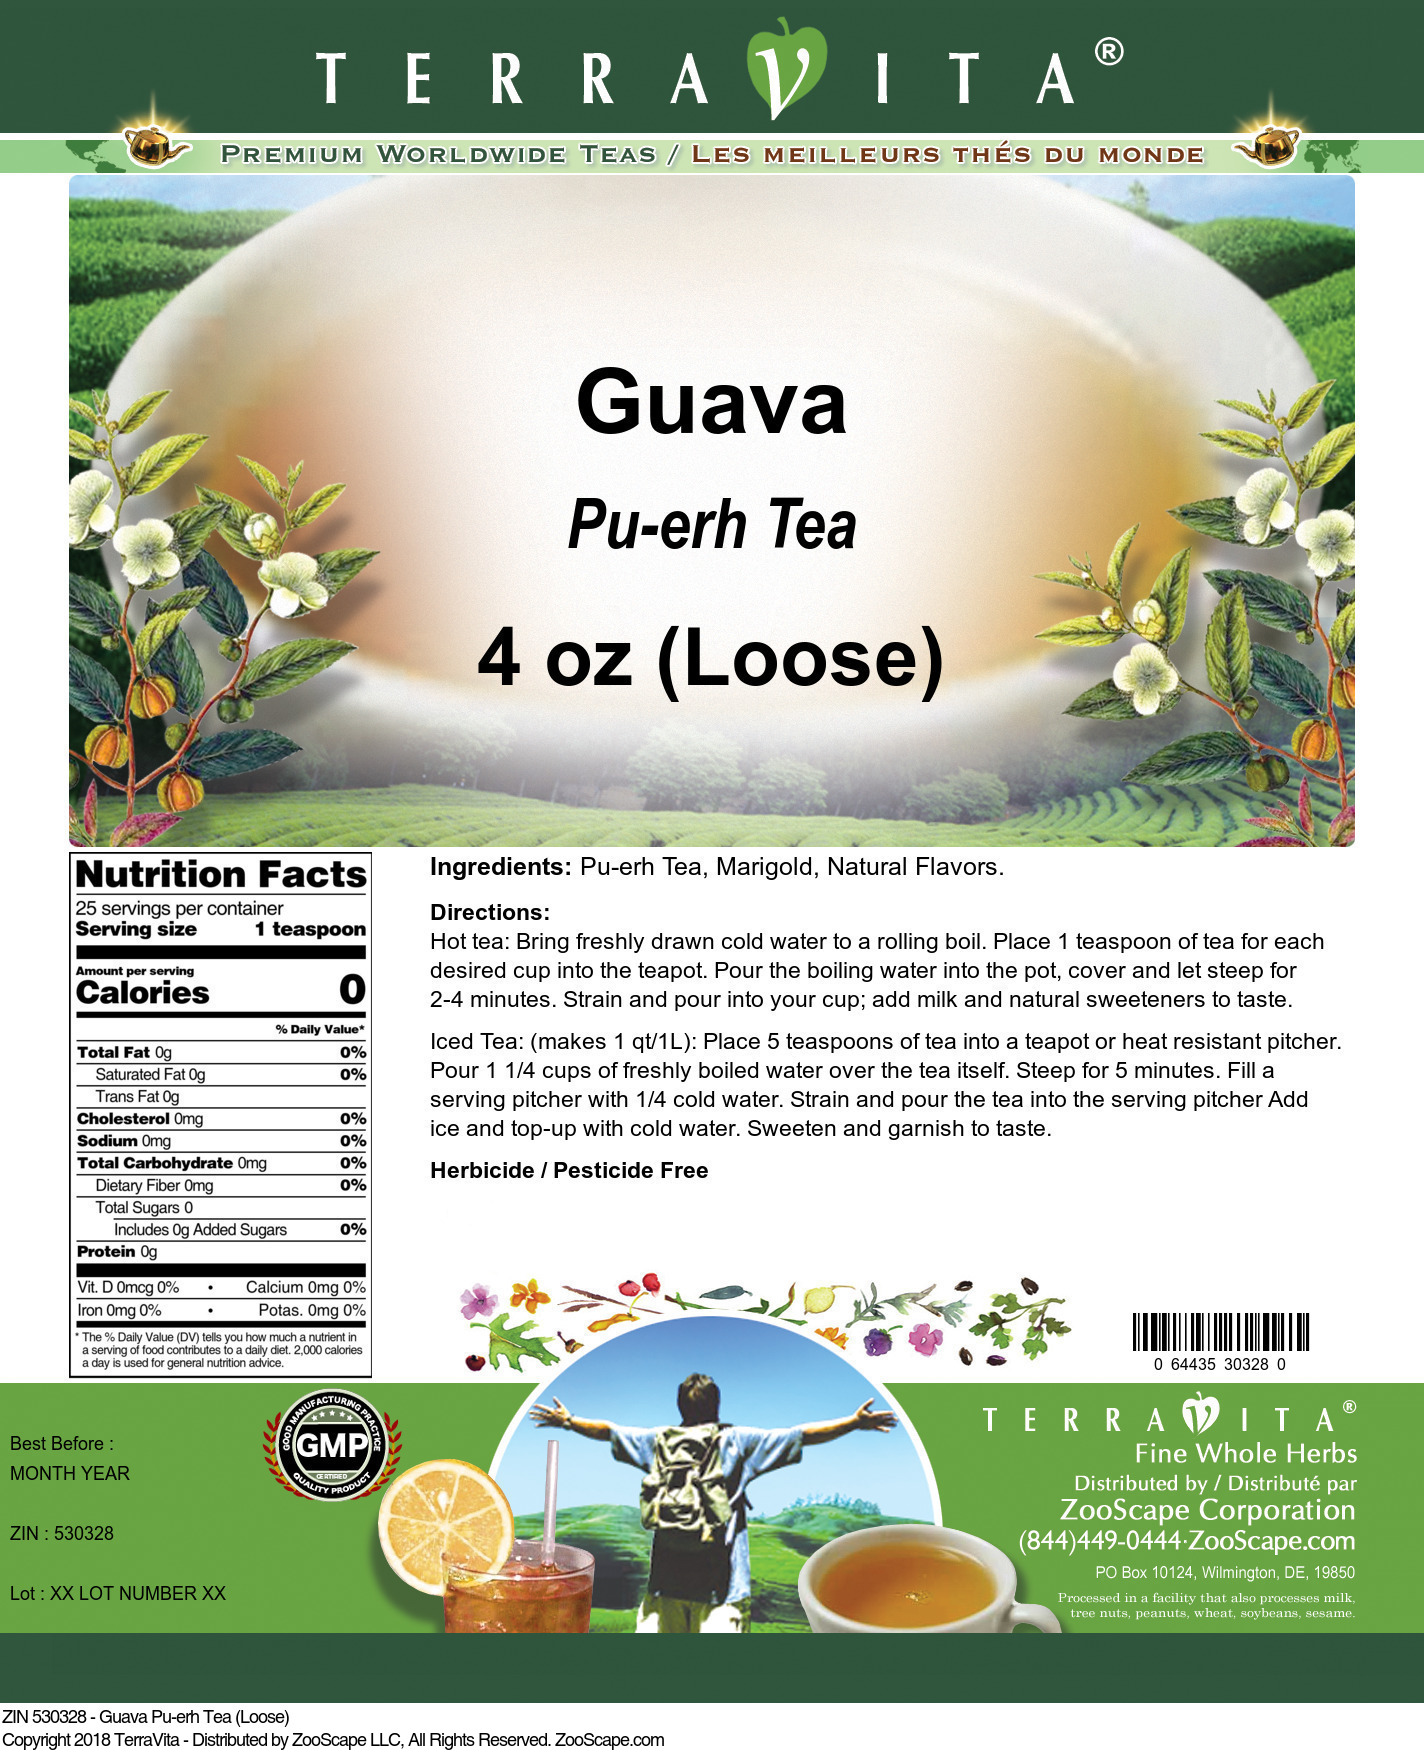 Guava Pu-erh Tea (Loose) - Label